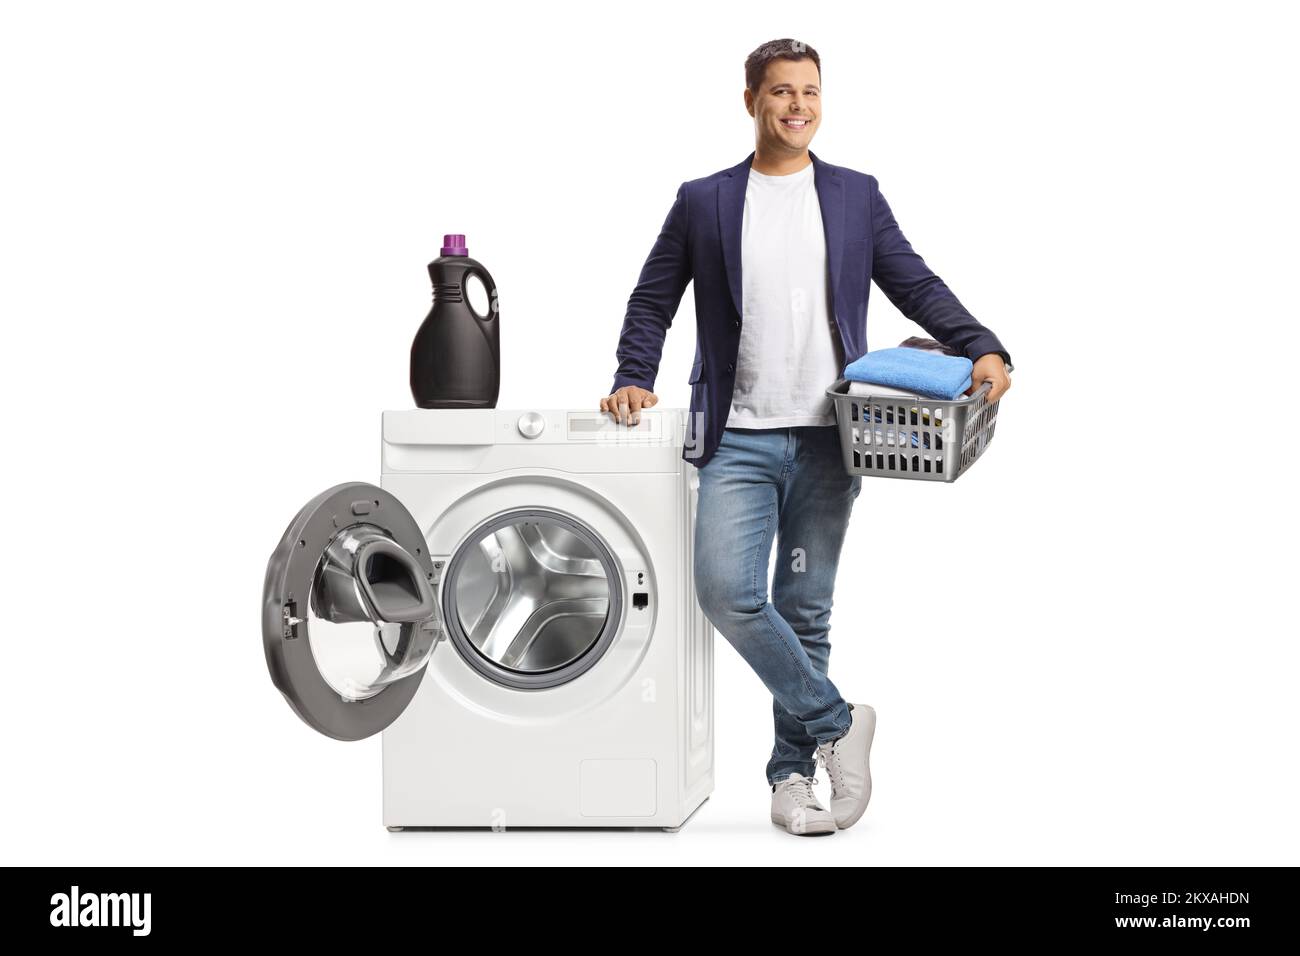 Ein junger Mann lehnt sich an eine Waschmaschine und hält einen Korb mit isolierter Kleidung auf weißem Hintergrund Stockfoto